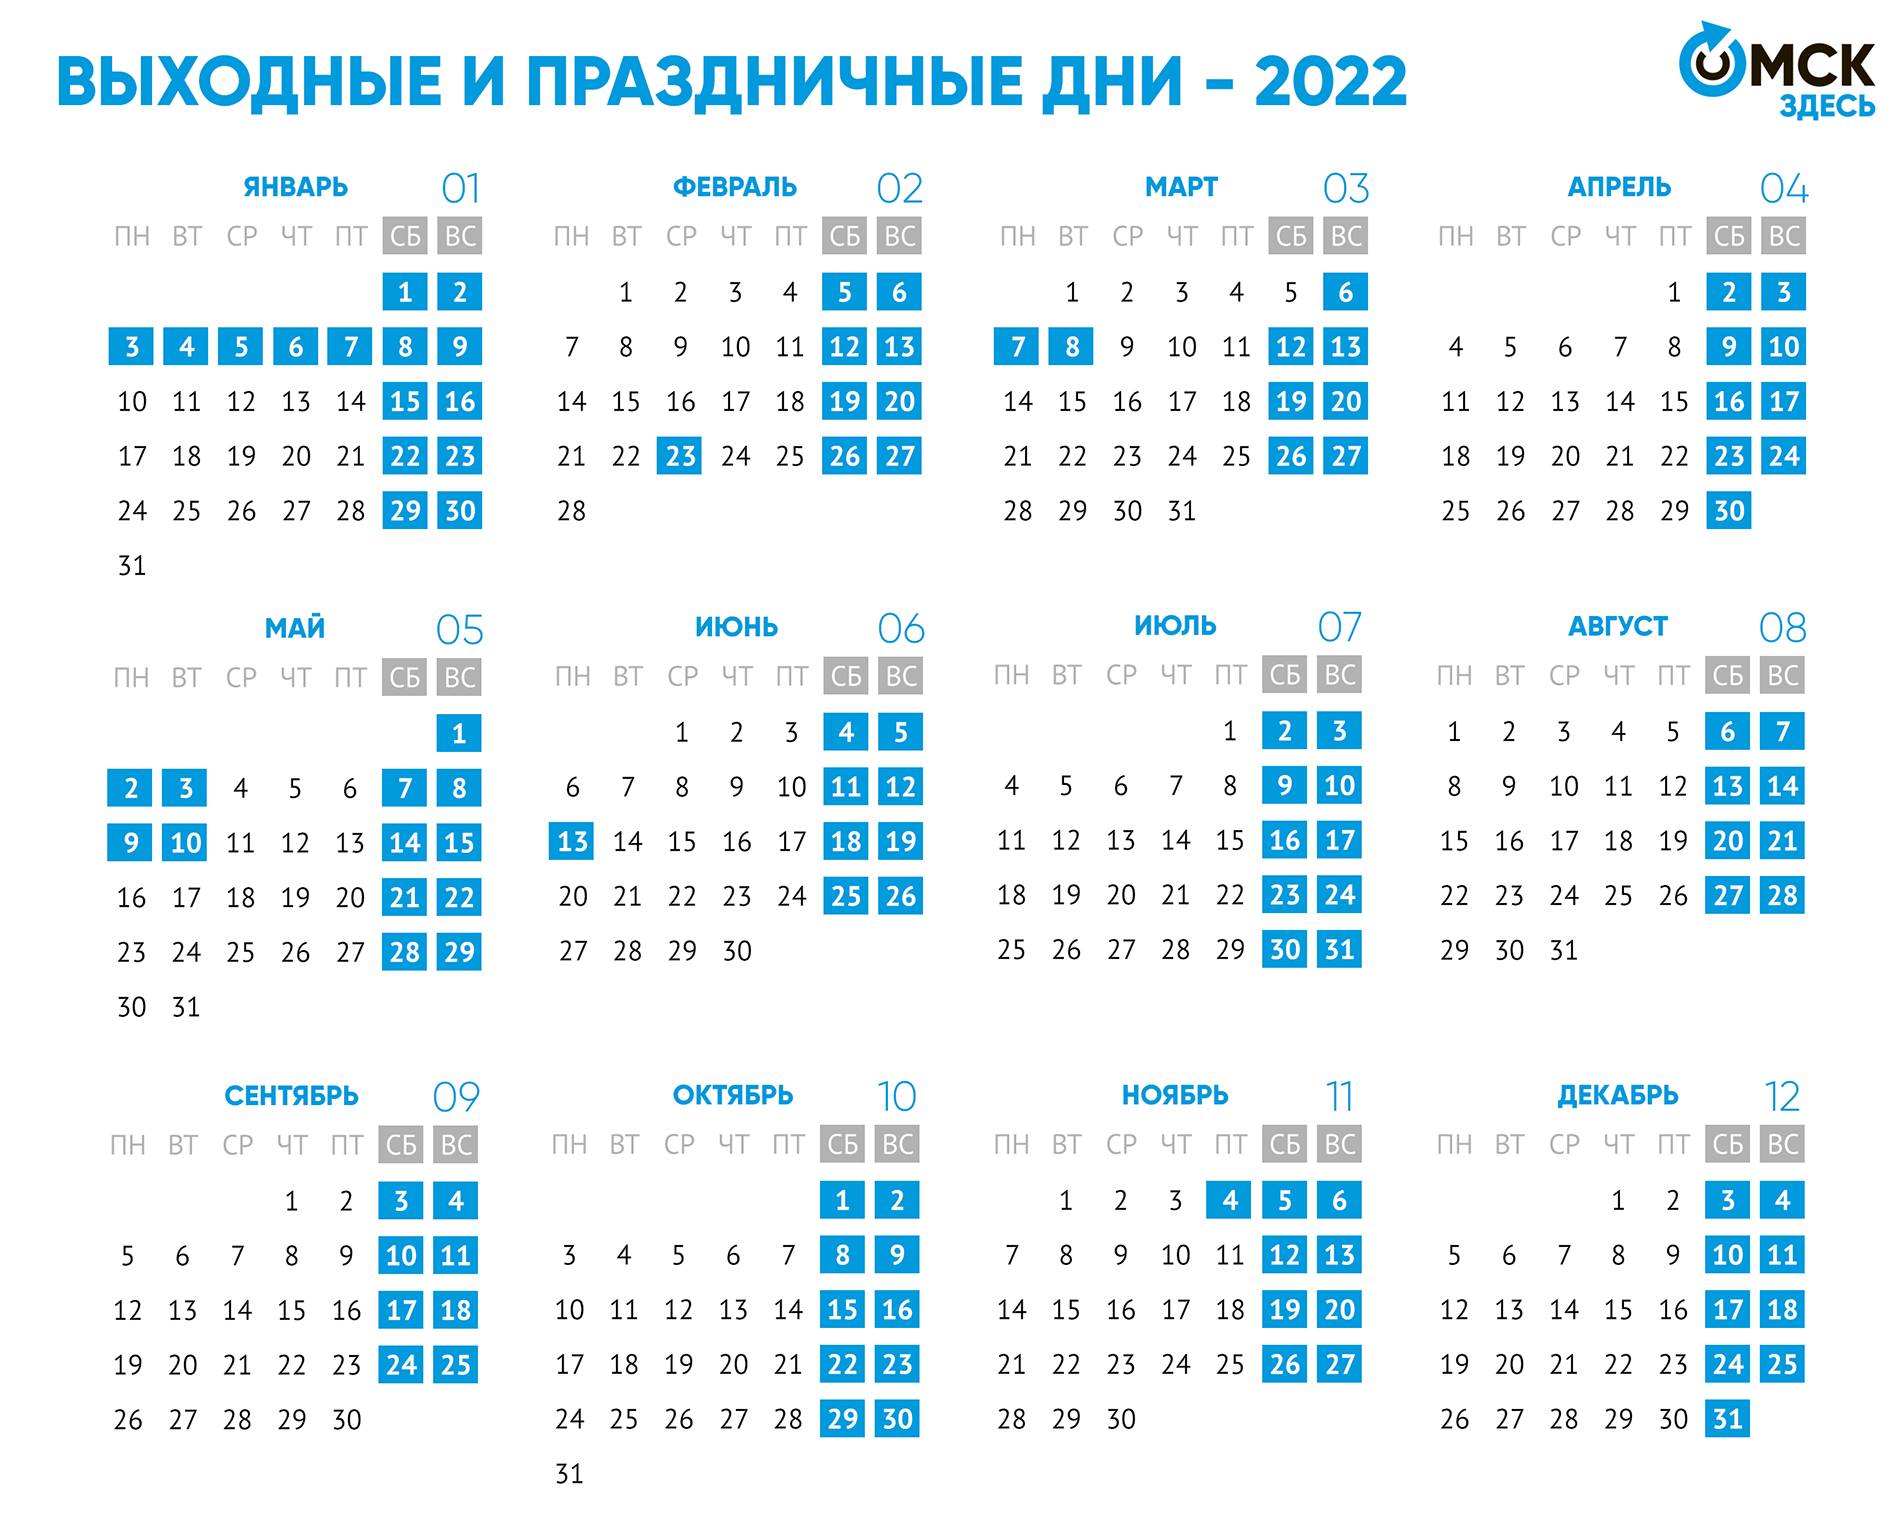 Новогодние 2022 Смотреть